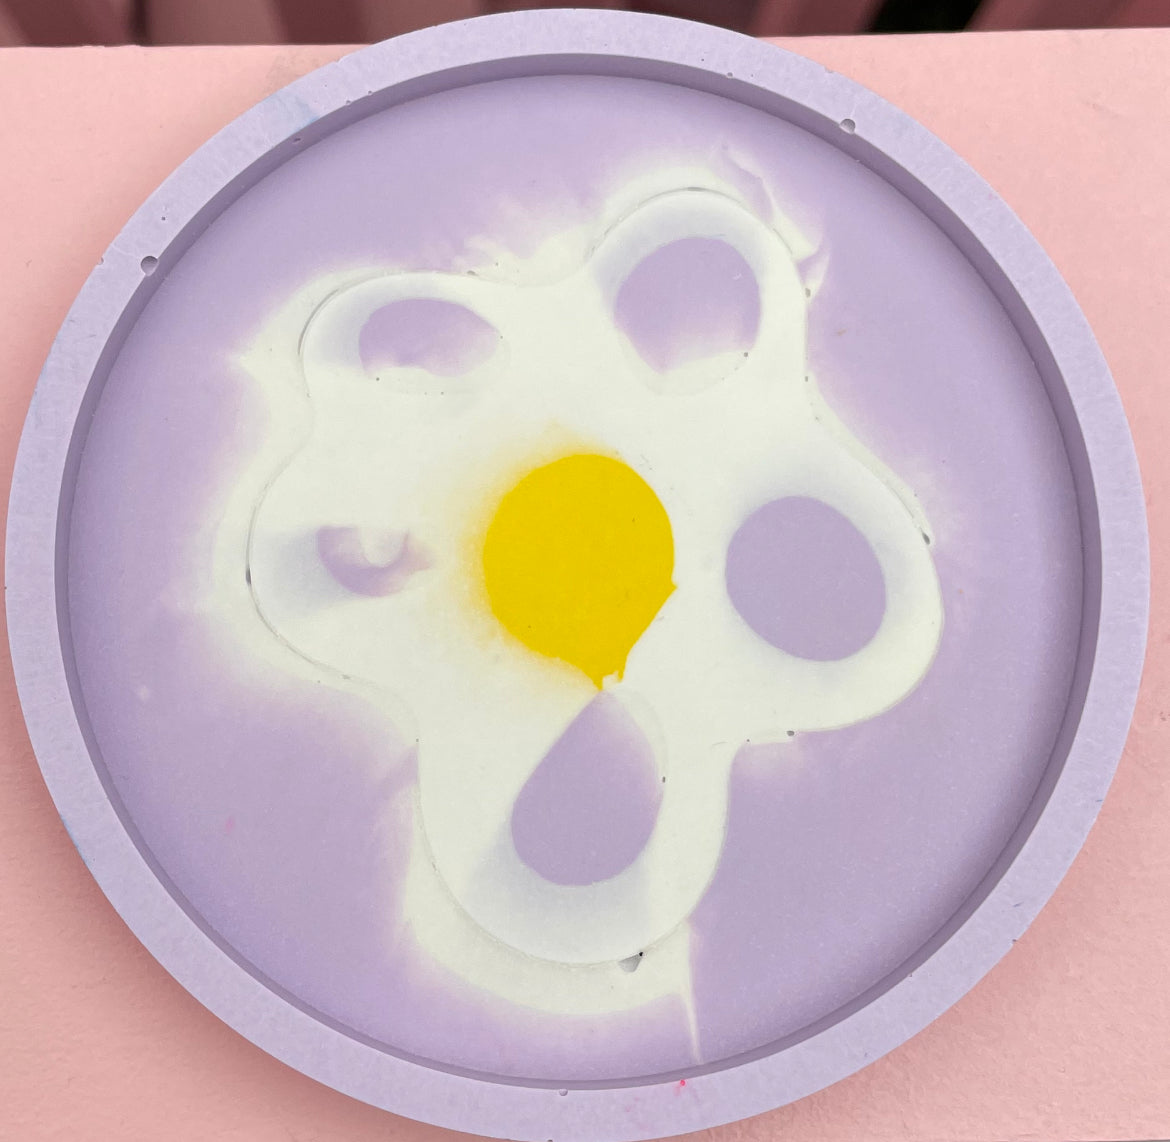 Coaster - Round (2 pieces) - Flower Power 6